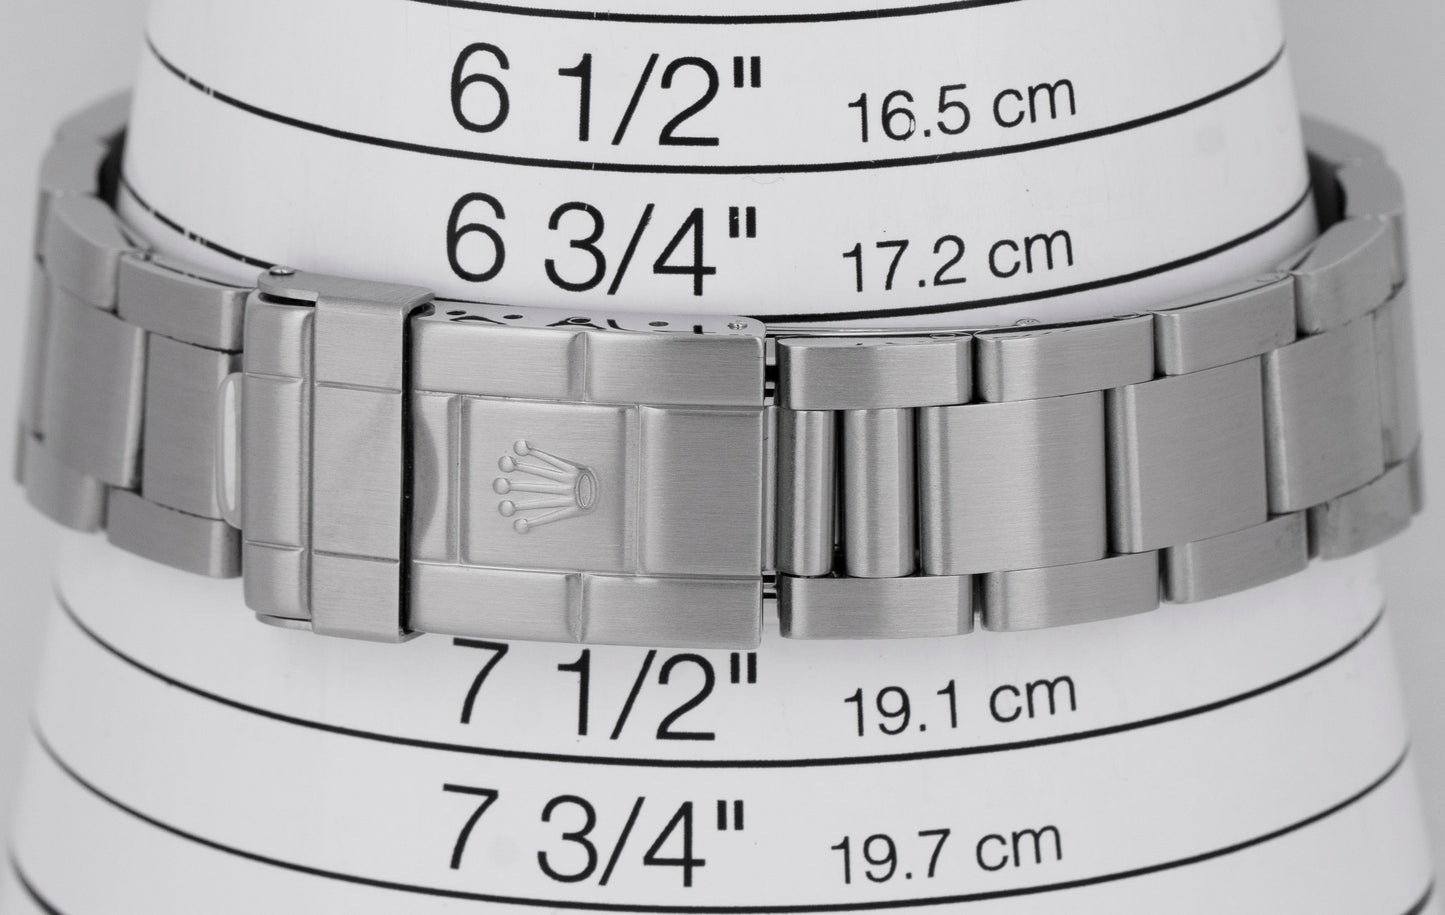 2009 PAPERS Rolex Explorer II Black REHAUT 40mm 3186 Steel GMT Watch 16570 B+P